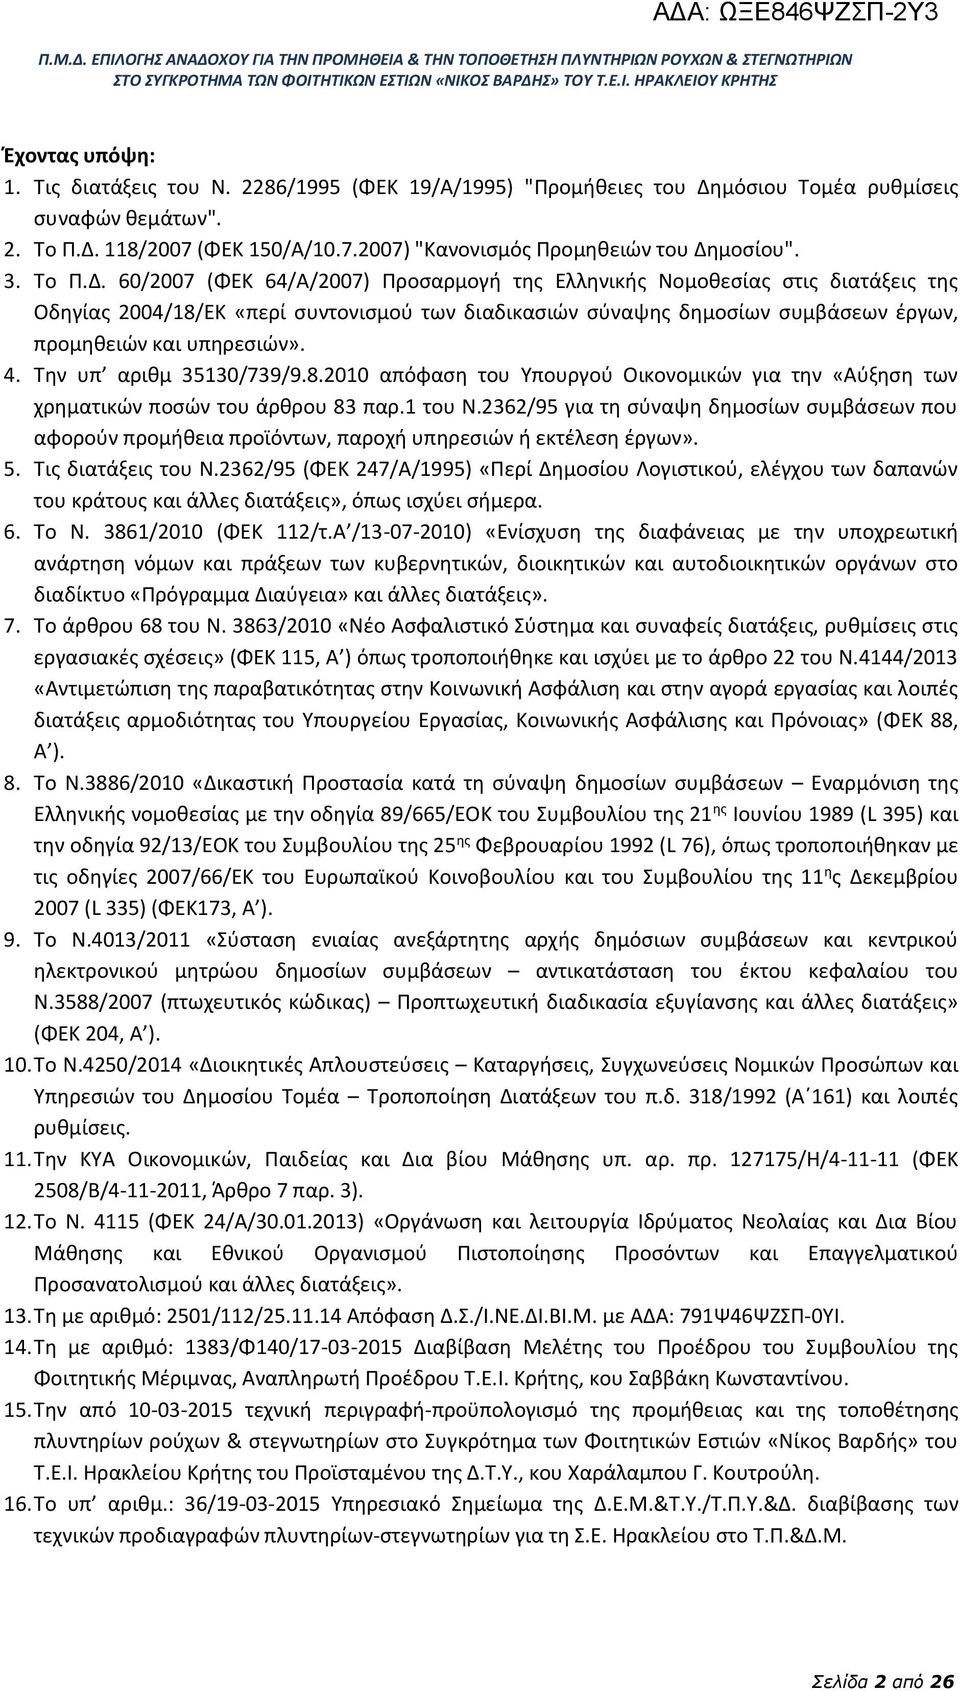 60/2007 (ΦΕΚ 64/Α/2007) Προσαρμογή της Ελληνικής Νομοθεσίας στις διατάξεις της Οδηγίας 2004/18/ΕΚ «περί συντονισμού των διαδικασιών σύναψης δημοσίων συμβάσεων έργων, προμηθειών και υπηρεσιών». 4.